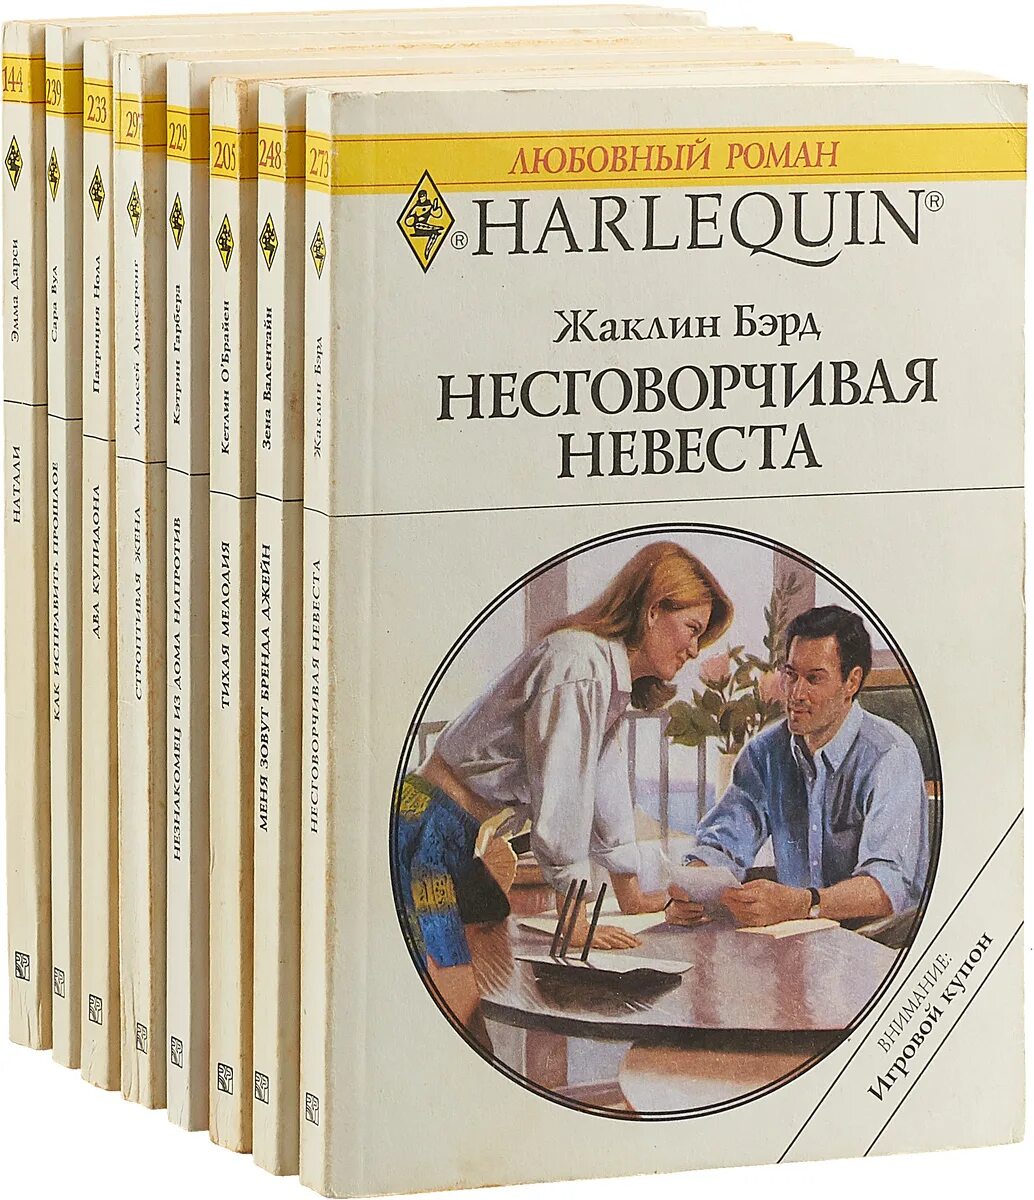 Сайт книг любовных романов. Любовные романы Арлекин 1992-1993. Harlequin любовные романы. Harlequin книги.